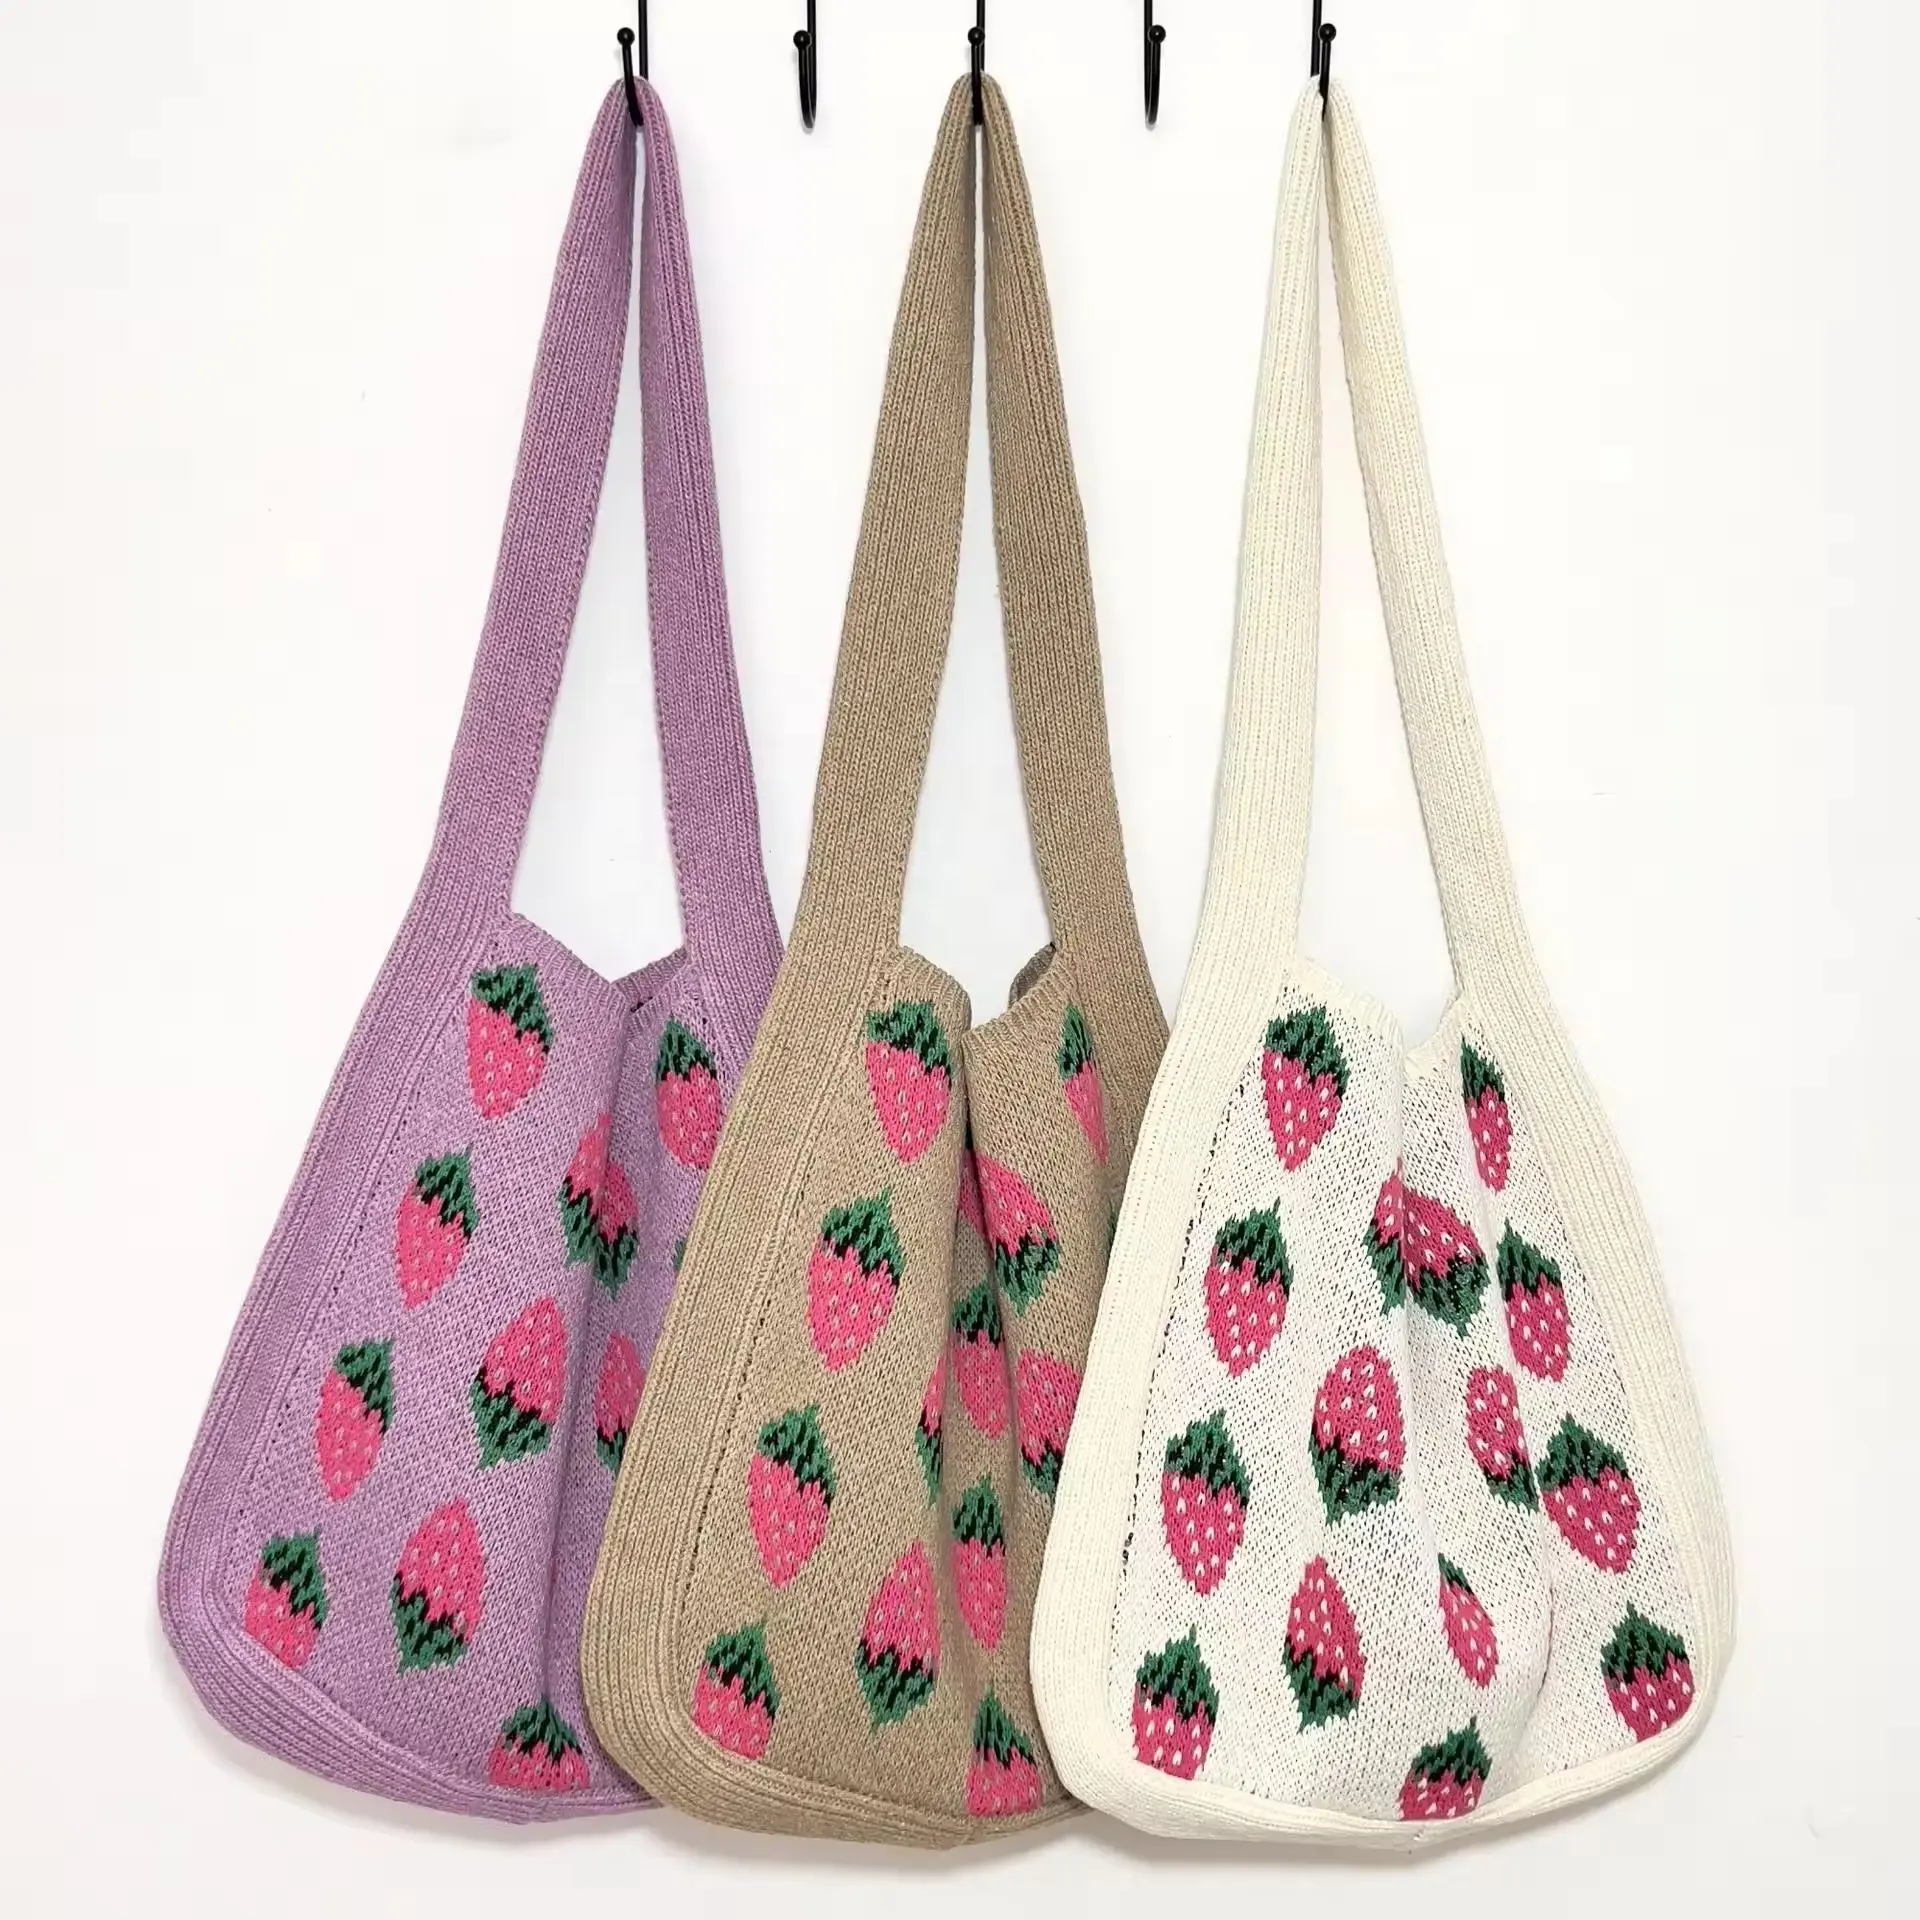 Fabrika toptan yeni tasarım çilek desen örme tığ kol çantası çanta kızlar kadınlar için